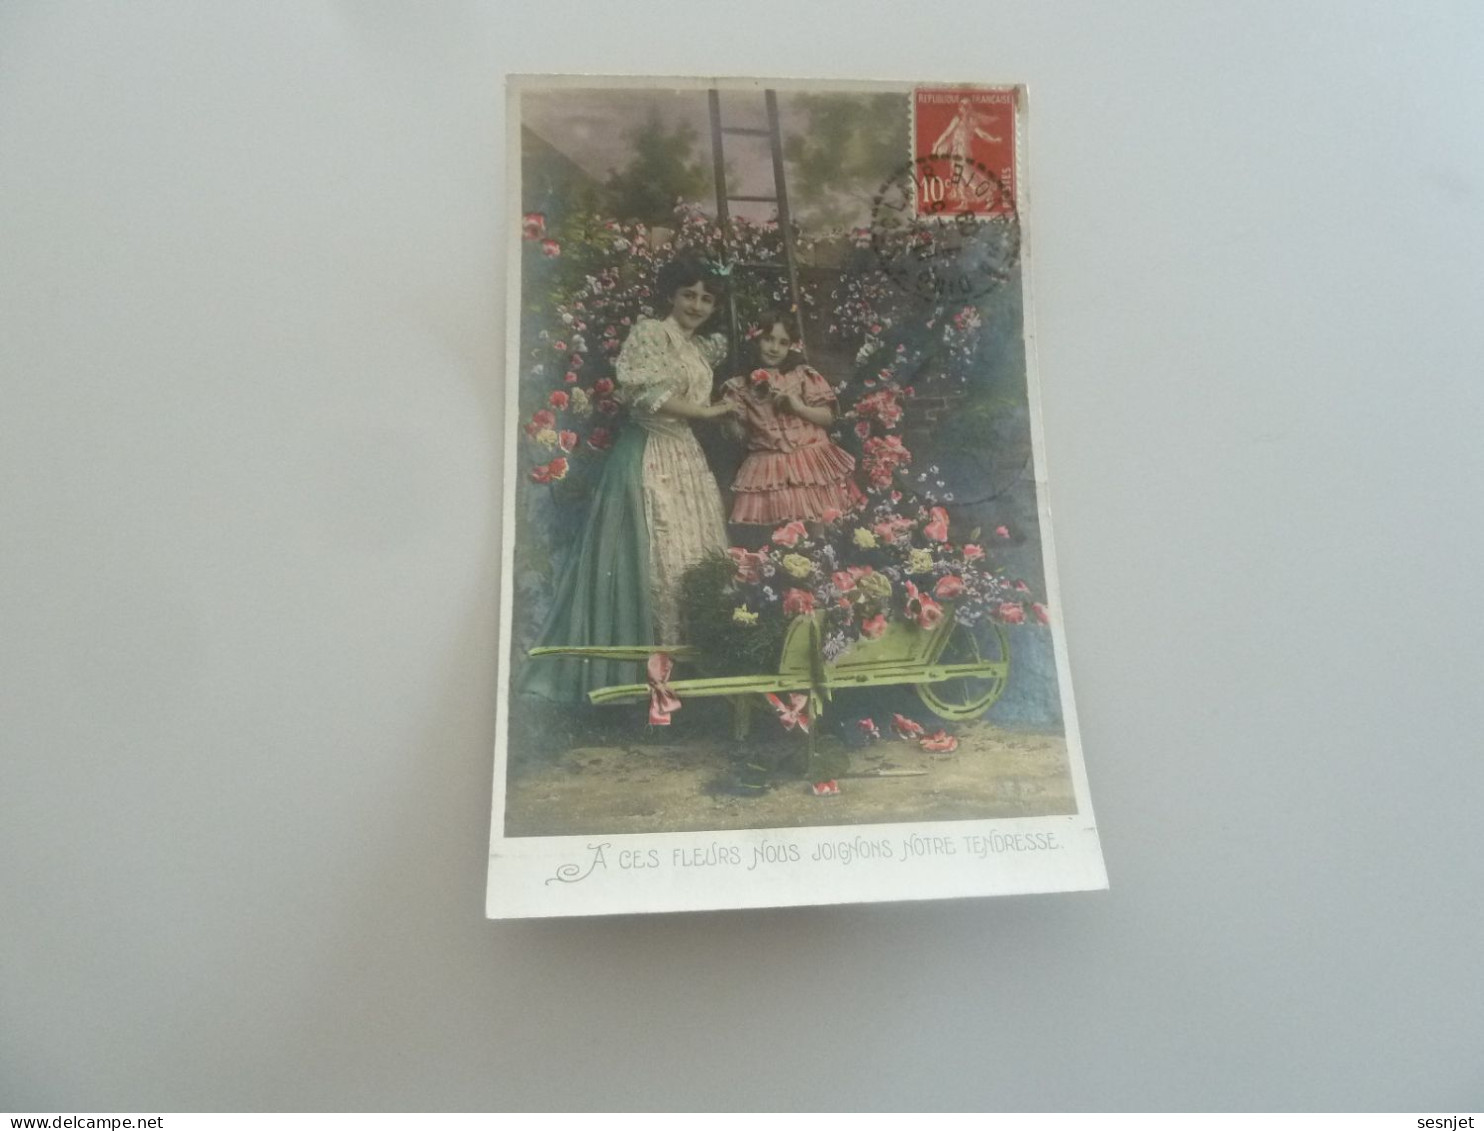 Dingy Saint-Clair - A Ces Fleurs Nous Joignons Notre Tendresse - 581 - Yt 135 - Editions A.s - Année 1909 - - Festa Della Mamma